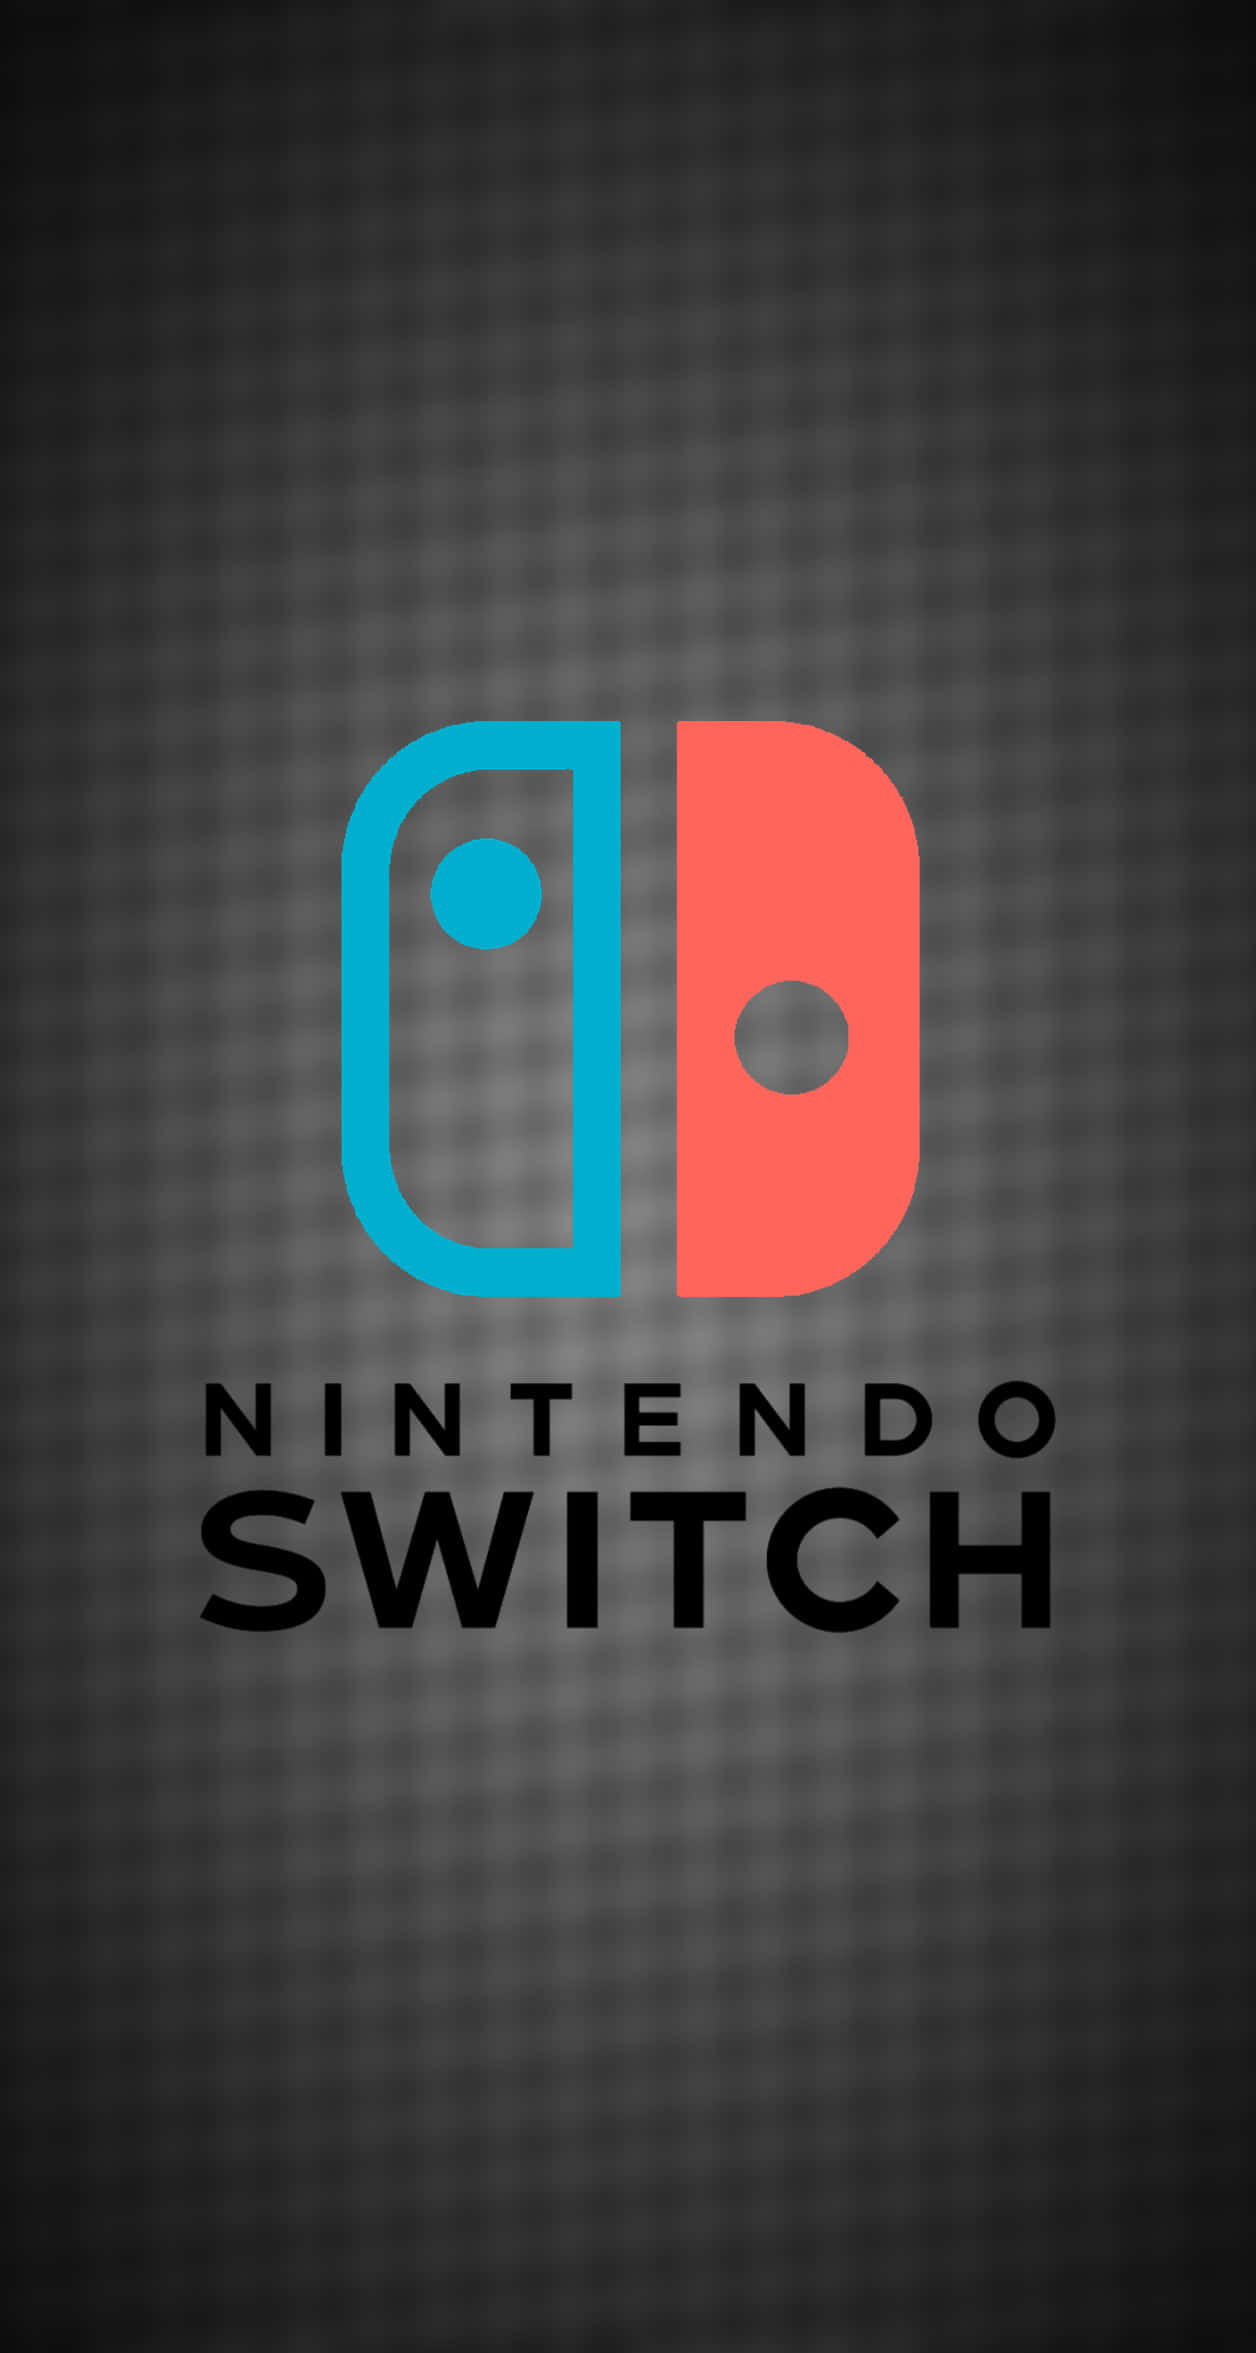 Experimentehoras Intermináveis De Jogos Com O Nintendo Switch.